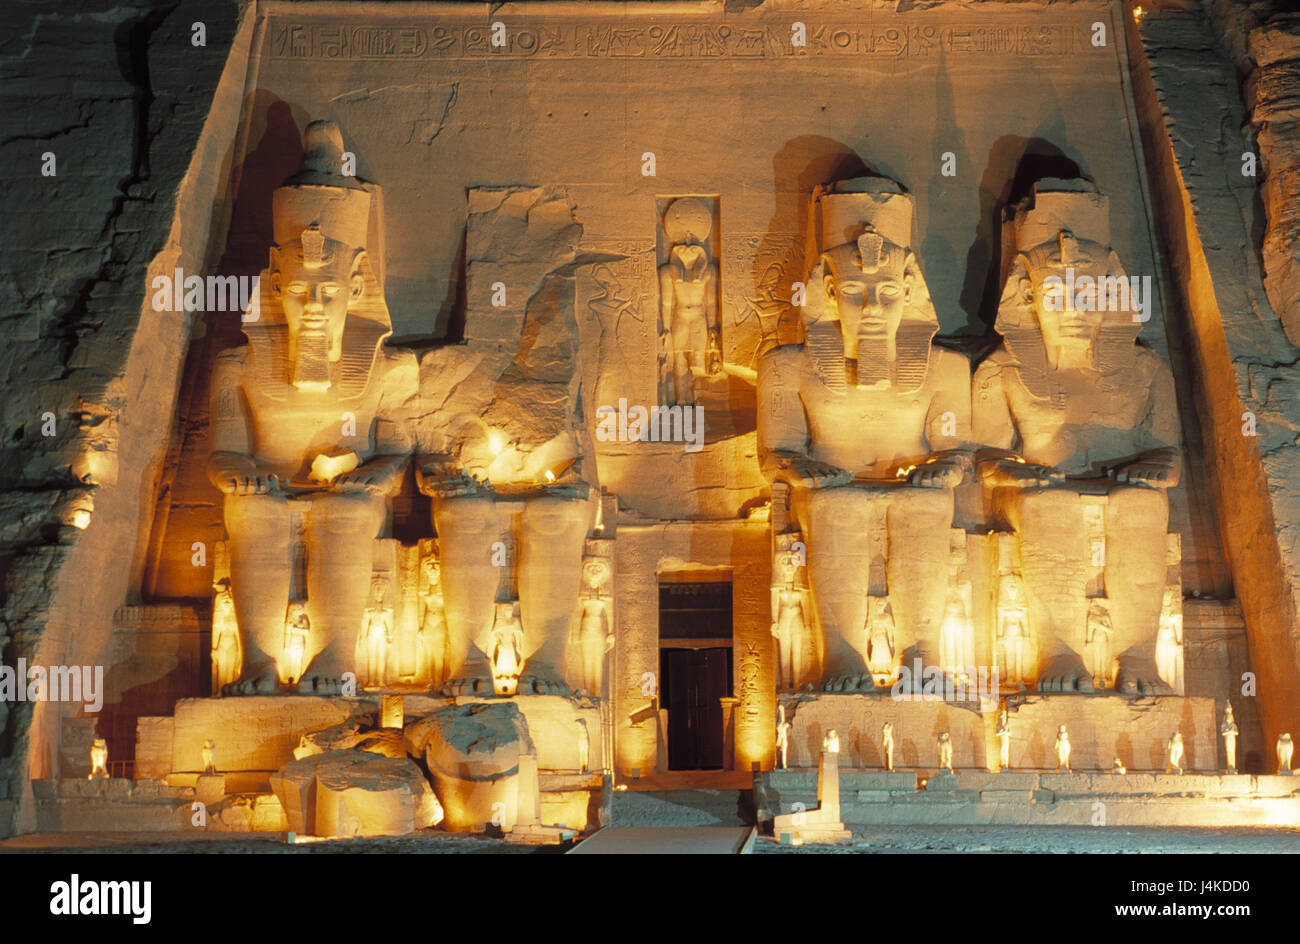 L'Egitto, la Nubia, tempio di Abu Simbel, input, illuminateds al di fuori, in Africa, in oriente, portale, statue gigantesche statue, re di Ramses II, luogo di interesse, l'UNESCO-patrimonio culturale mondiale, crepuscolo, luce della sera, sera, illuminazione, illuminazione accesa Foto Stock